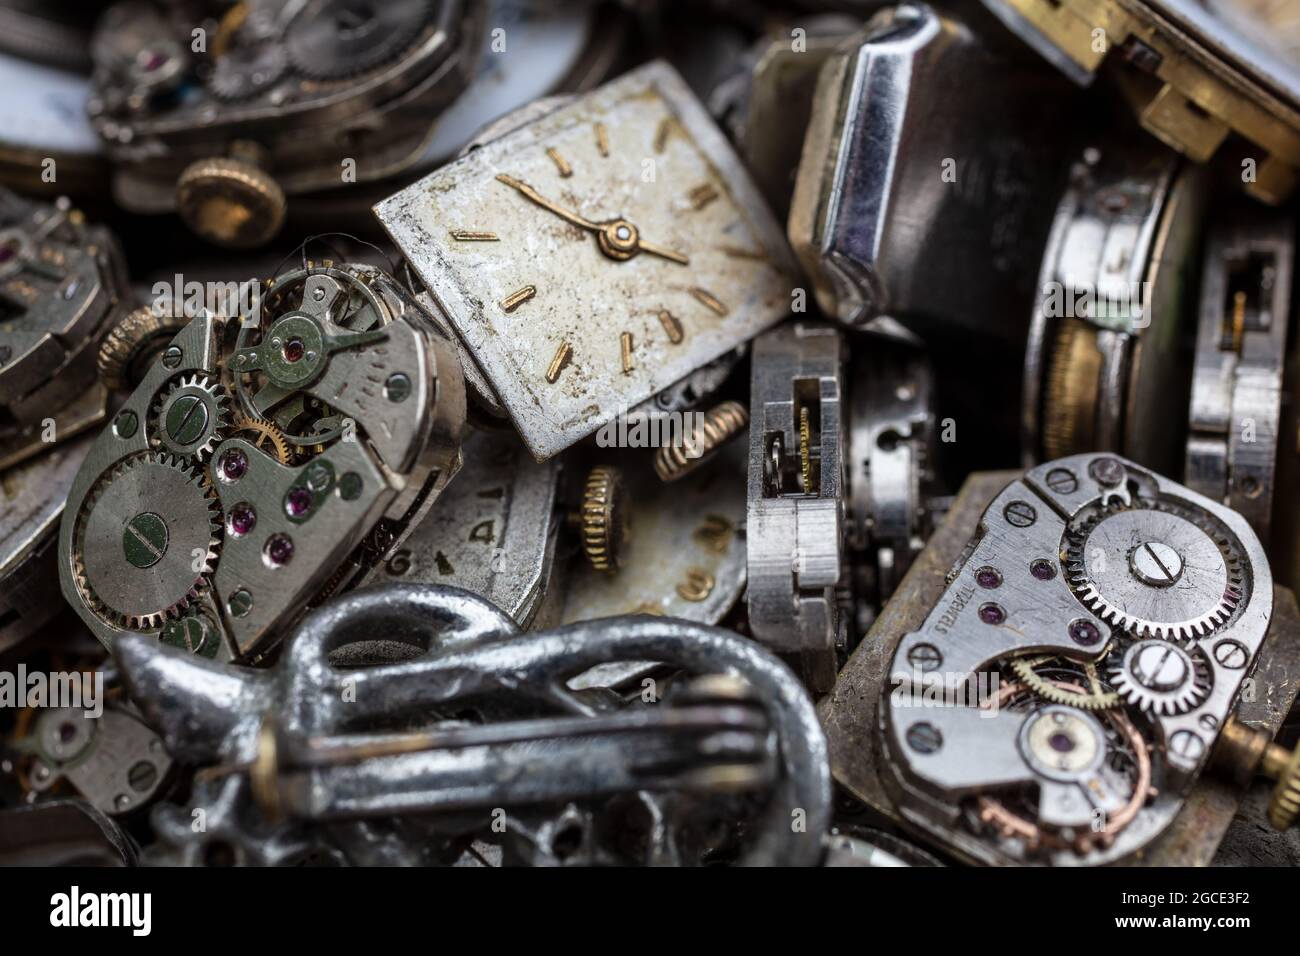 Macro primer plano de antiguos relojes rotos, reloj de pulsera o movimientos de reloj de pulsera y partes para la reparación. Fotografía de concepto de tiempo. Foto de stock